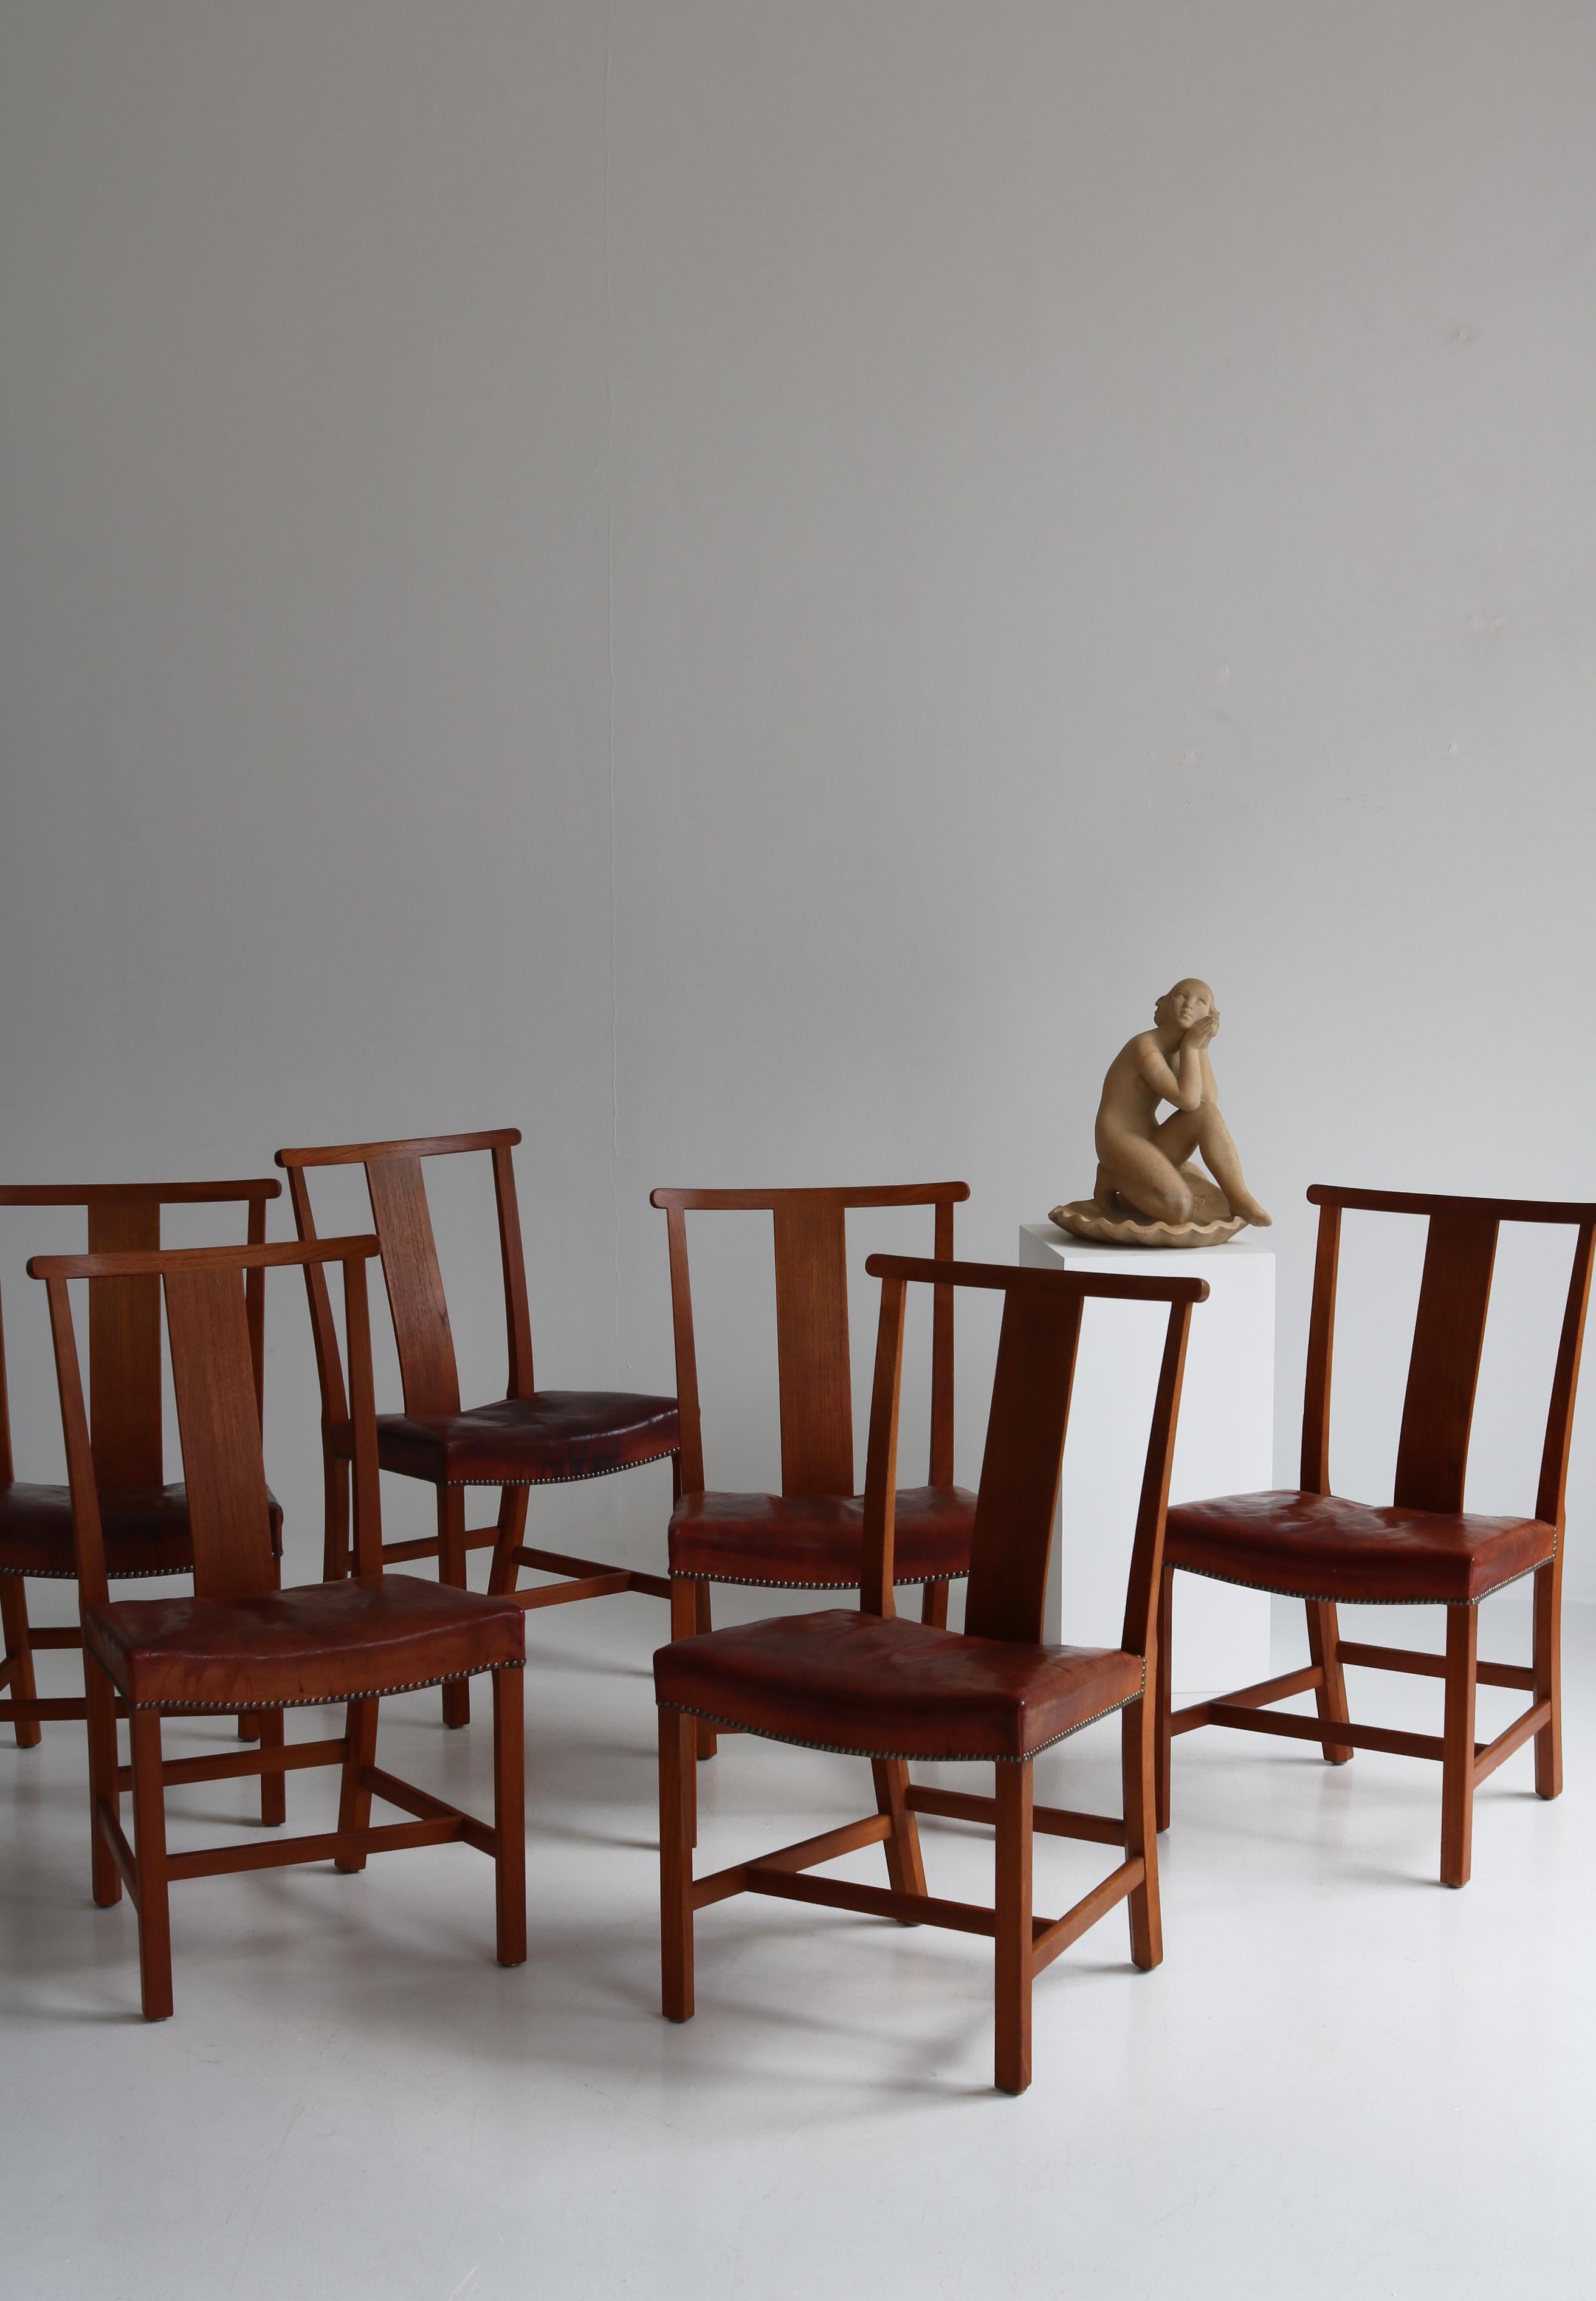 Un ensemble très rare et important de six chaises de salle à manger en teck conçues par Børge Mogensen et fabriquées par l'ébéniste Ove Lander, au Danemark, en 1939. Assise garnie de cuir nigérien patiné d'origine, munie de clous en laiton.
Il